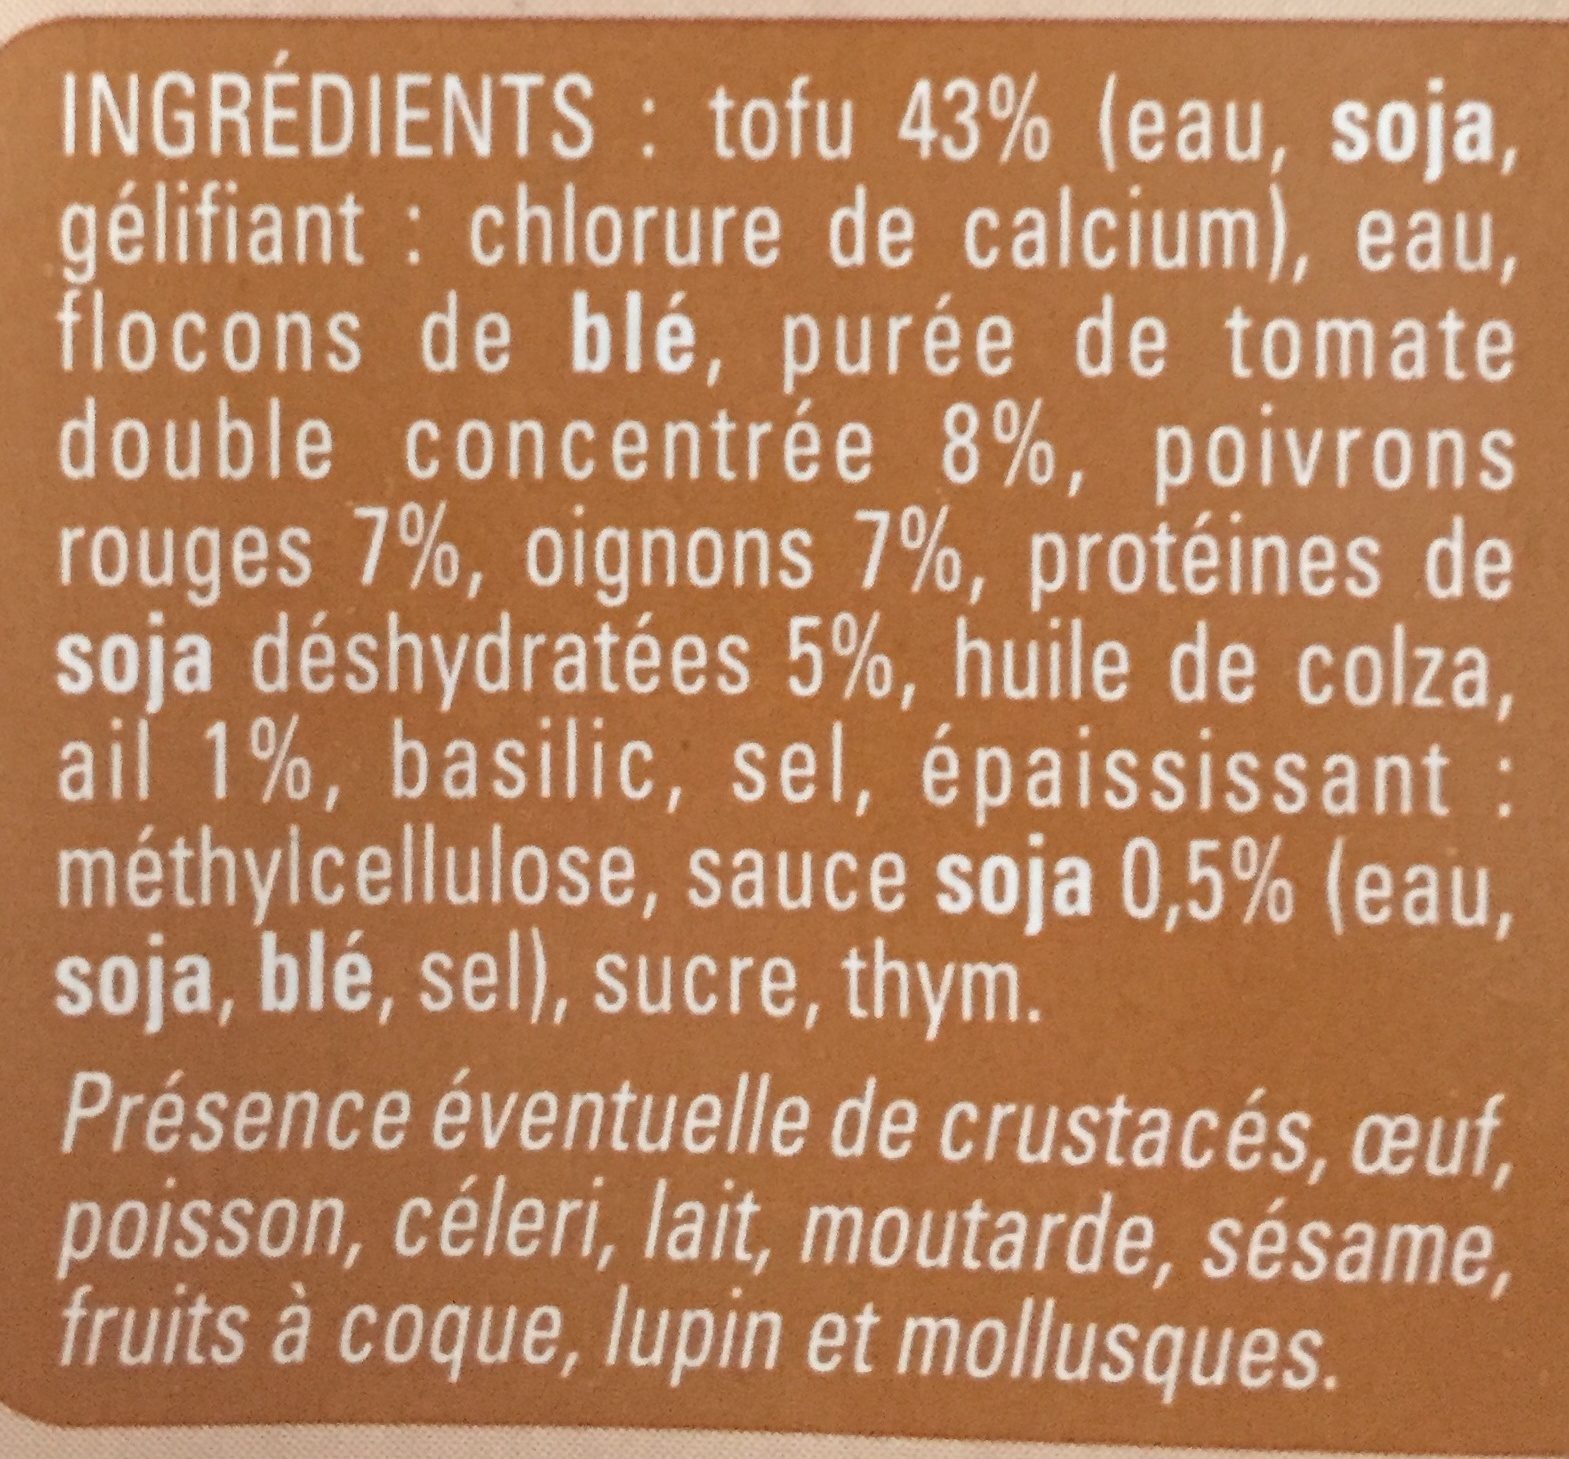 Steaks de tofu - Ingredients - fr